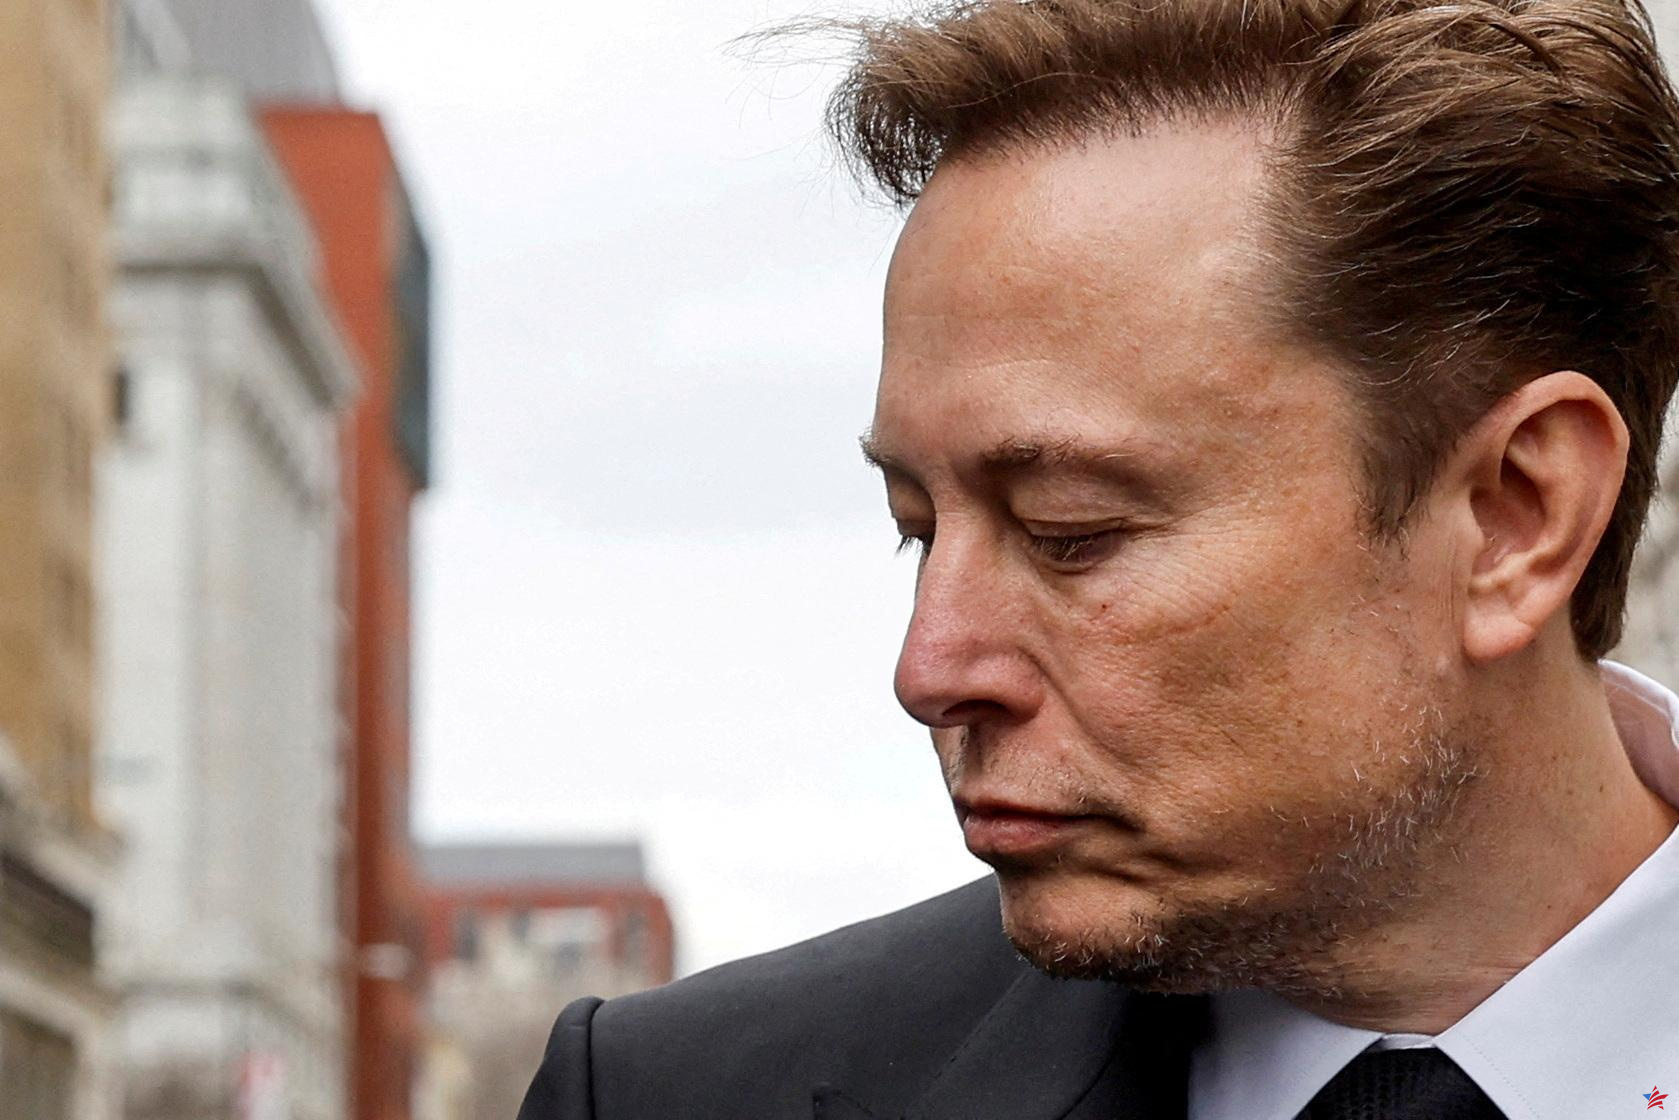 Elon Musk presenta denuncia contra OpenAI y Sam Altman